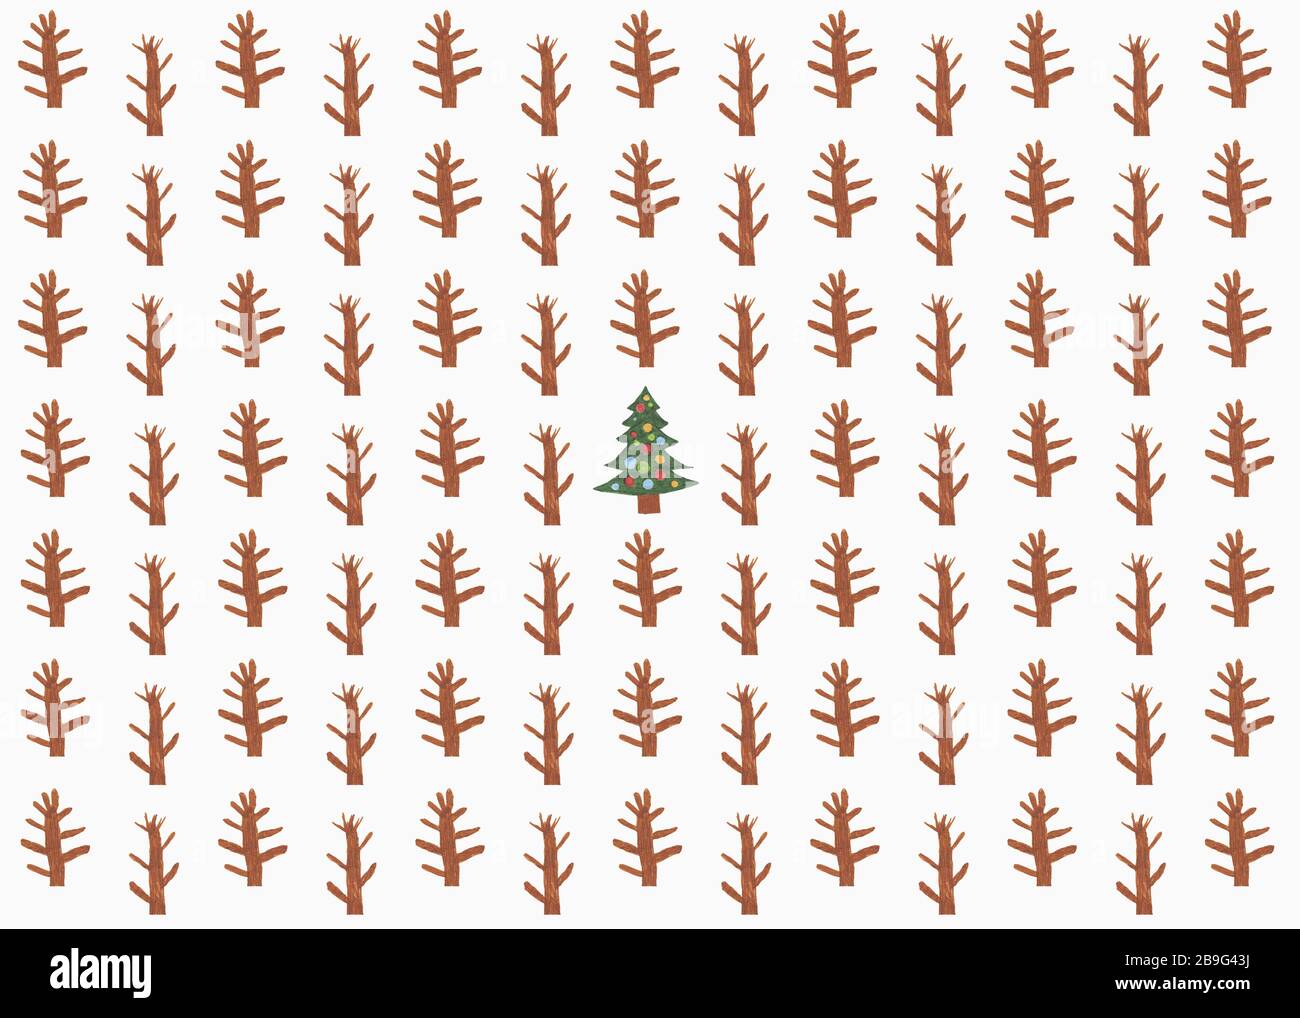 Childs Zeichnung von Weihnachtsbaum umgeben von Saplings Stockfoto